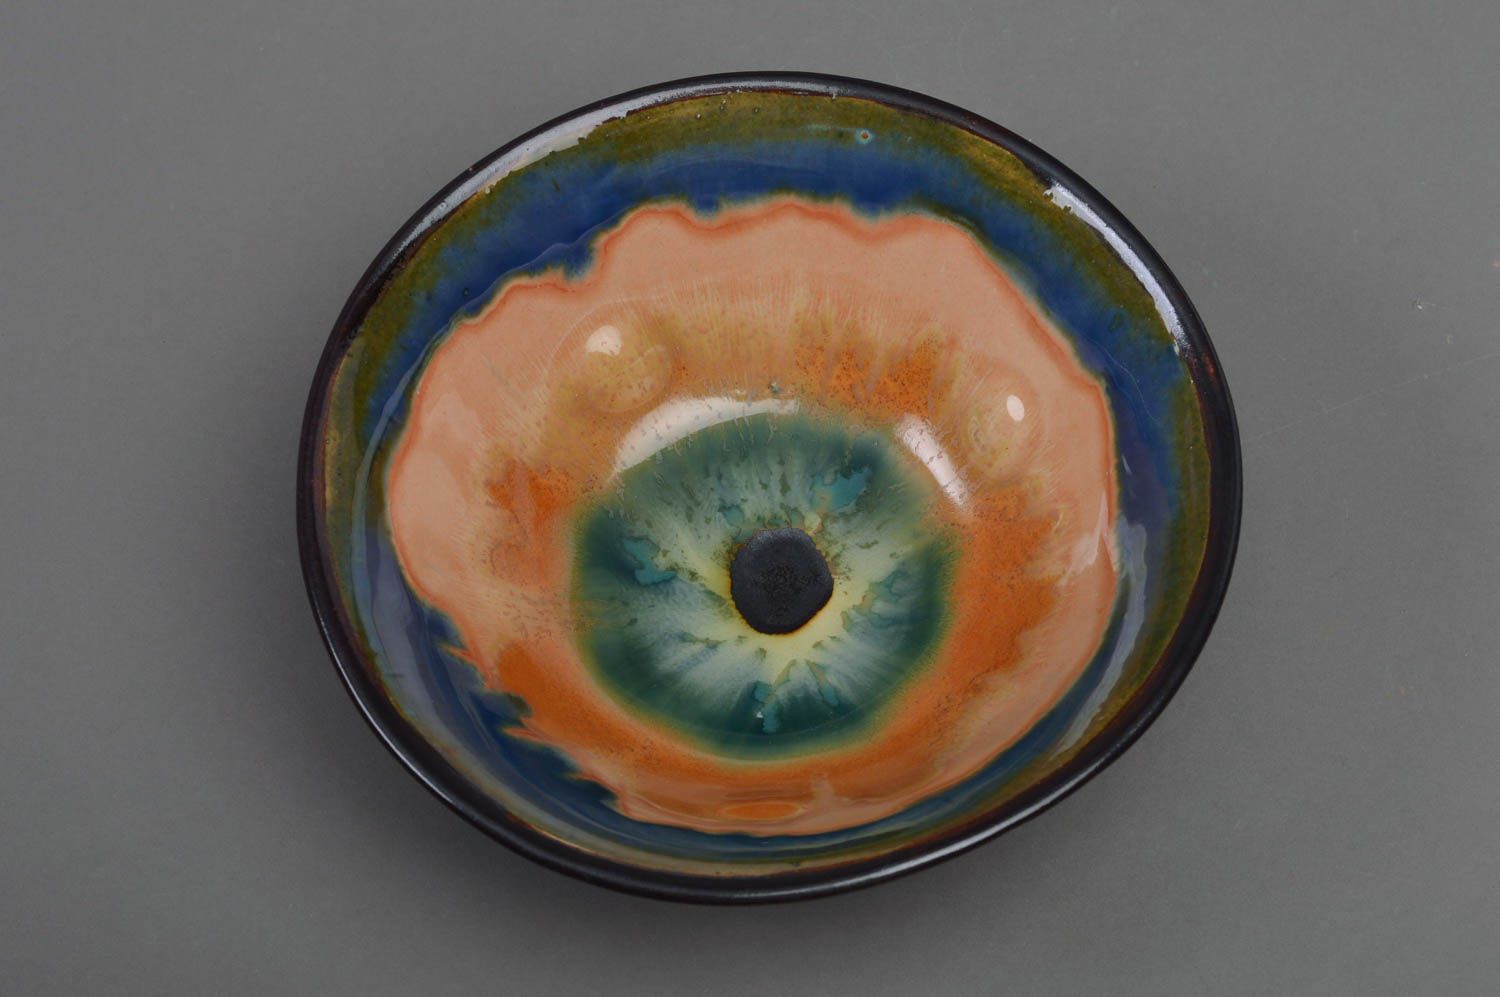 Joli bol porcelaine avec peinture fait main vaisselle insolite multicolore photo 1